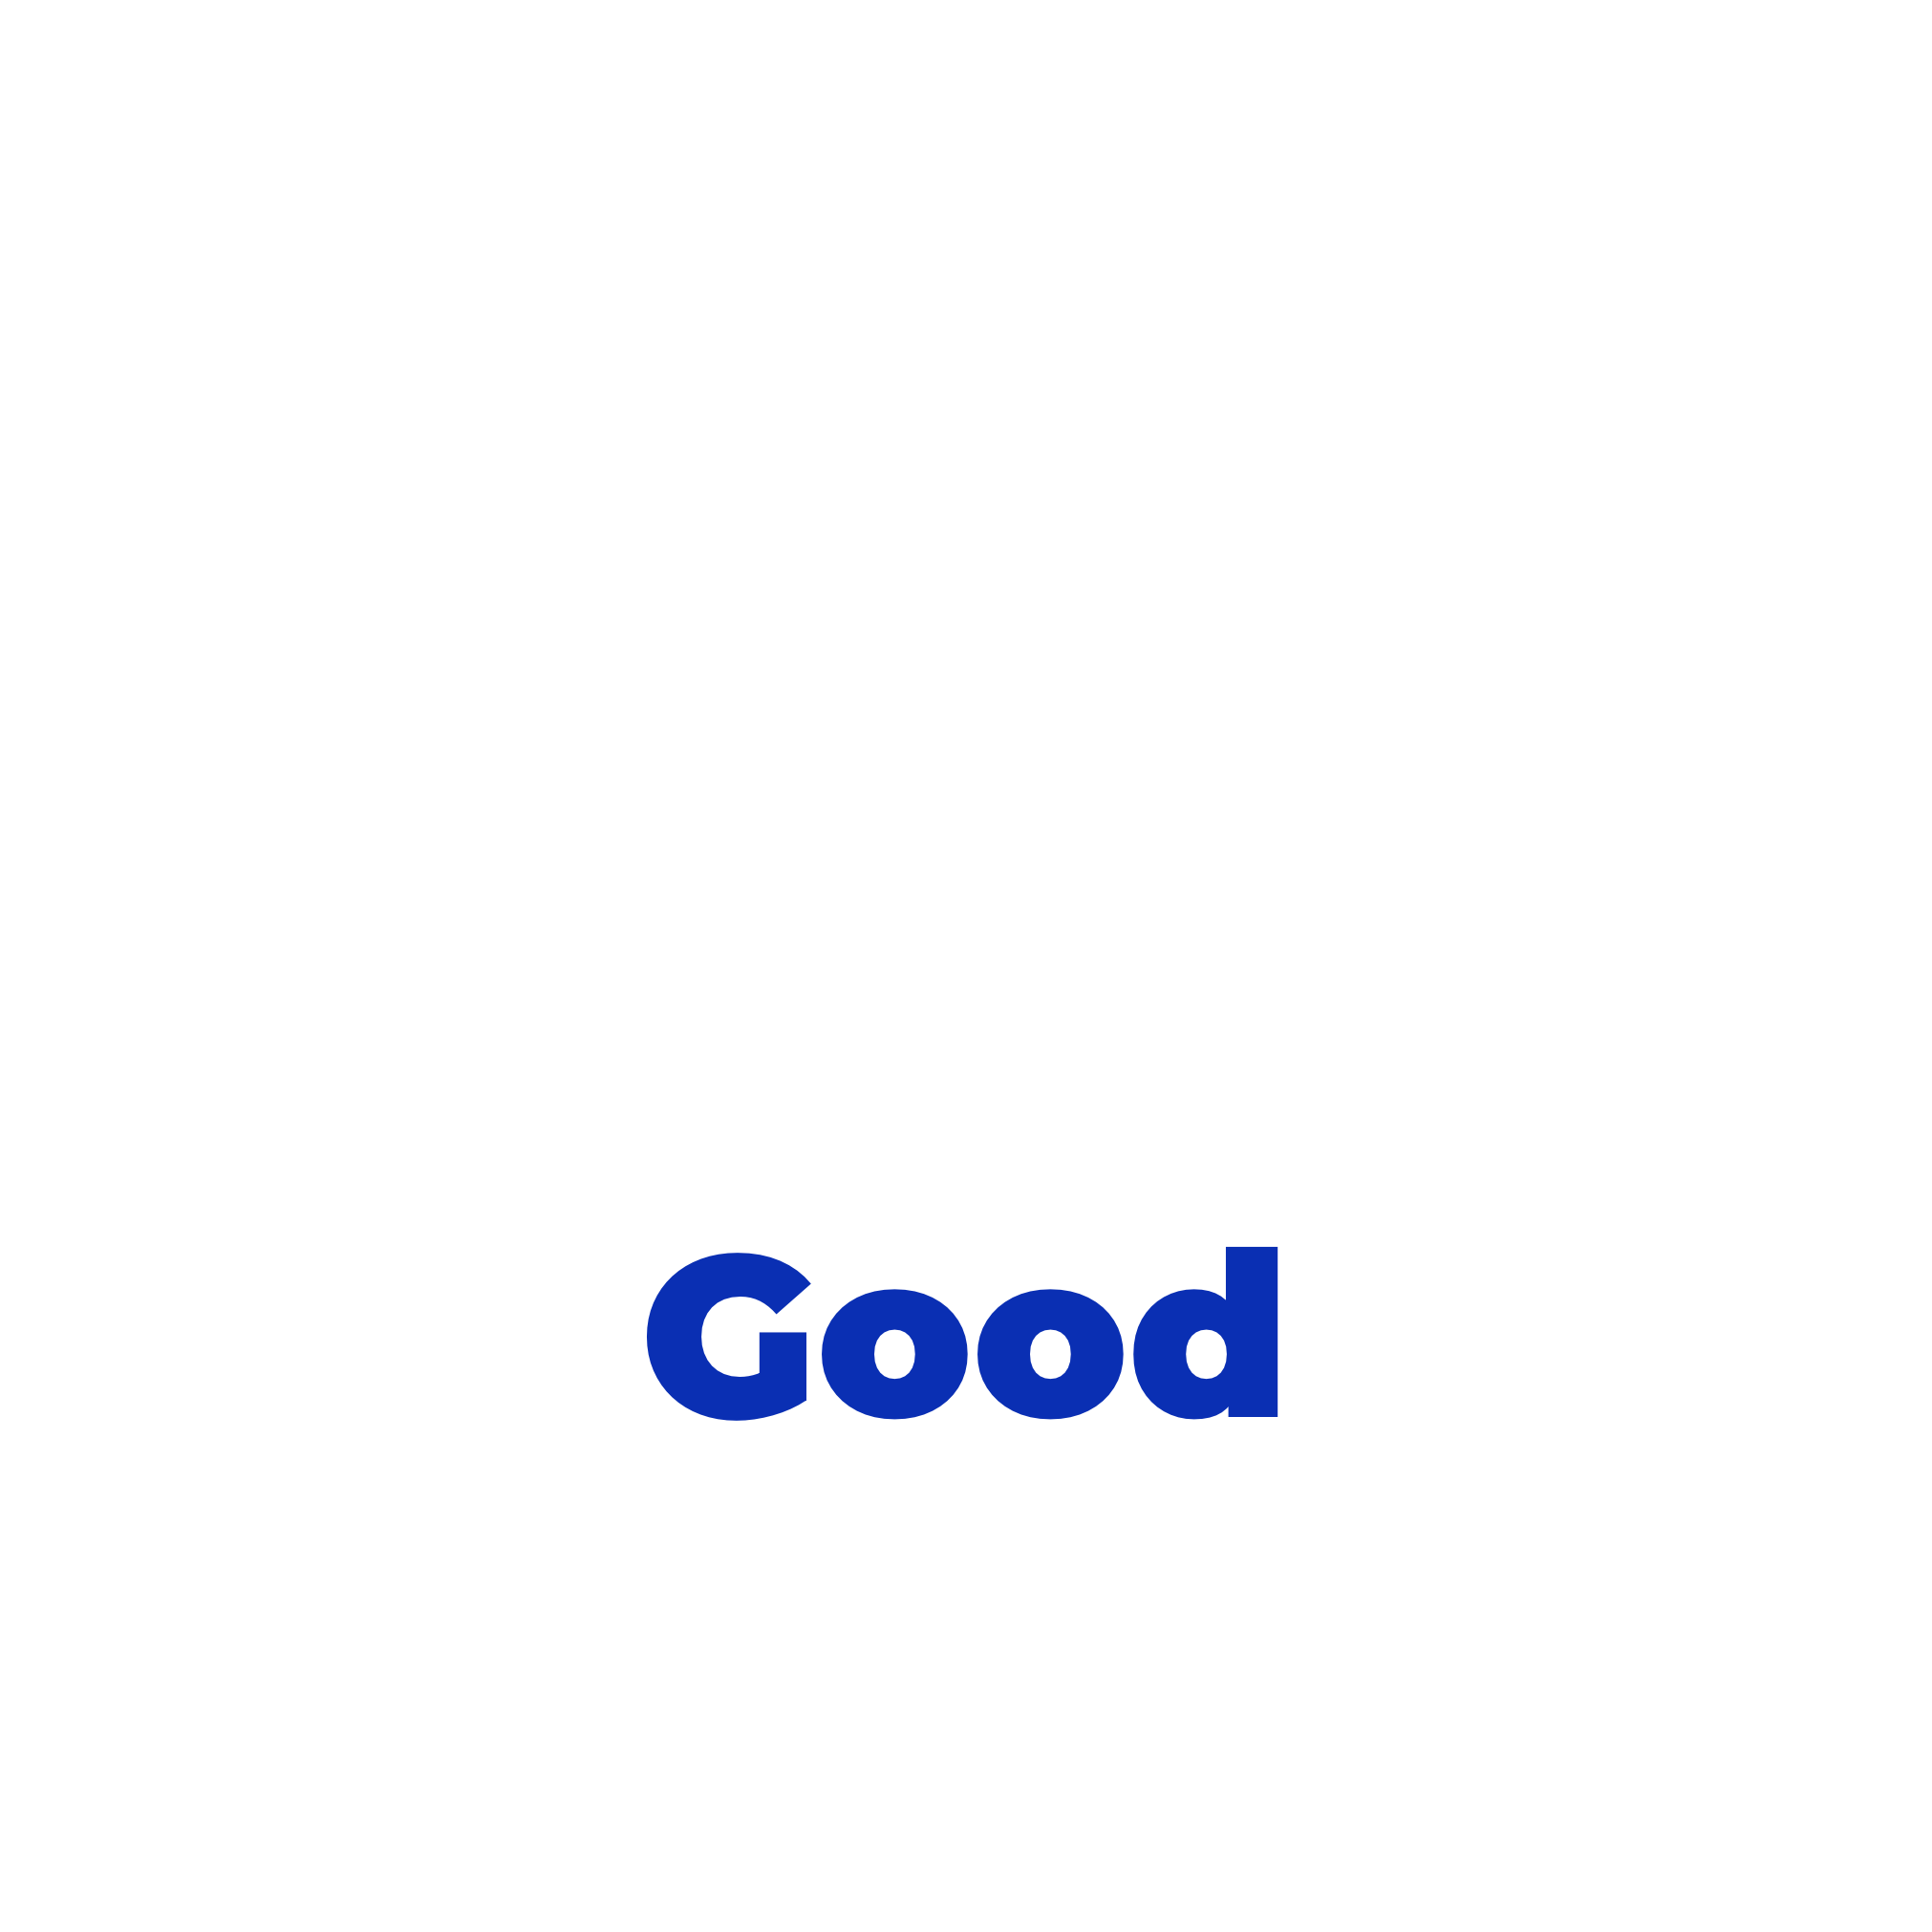 nAIxt for human good